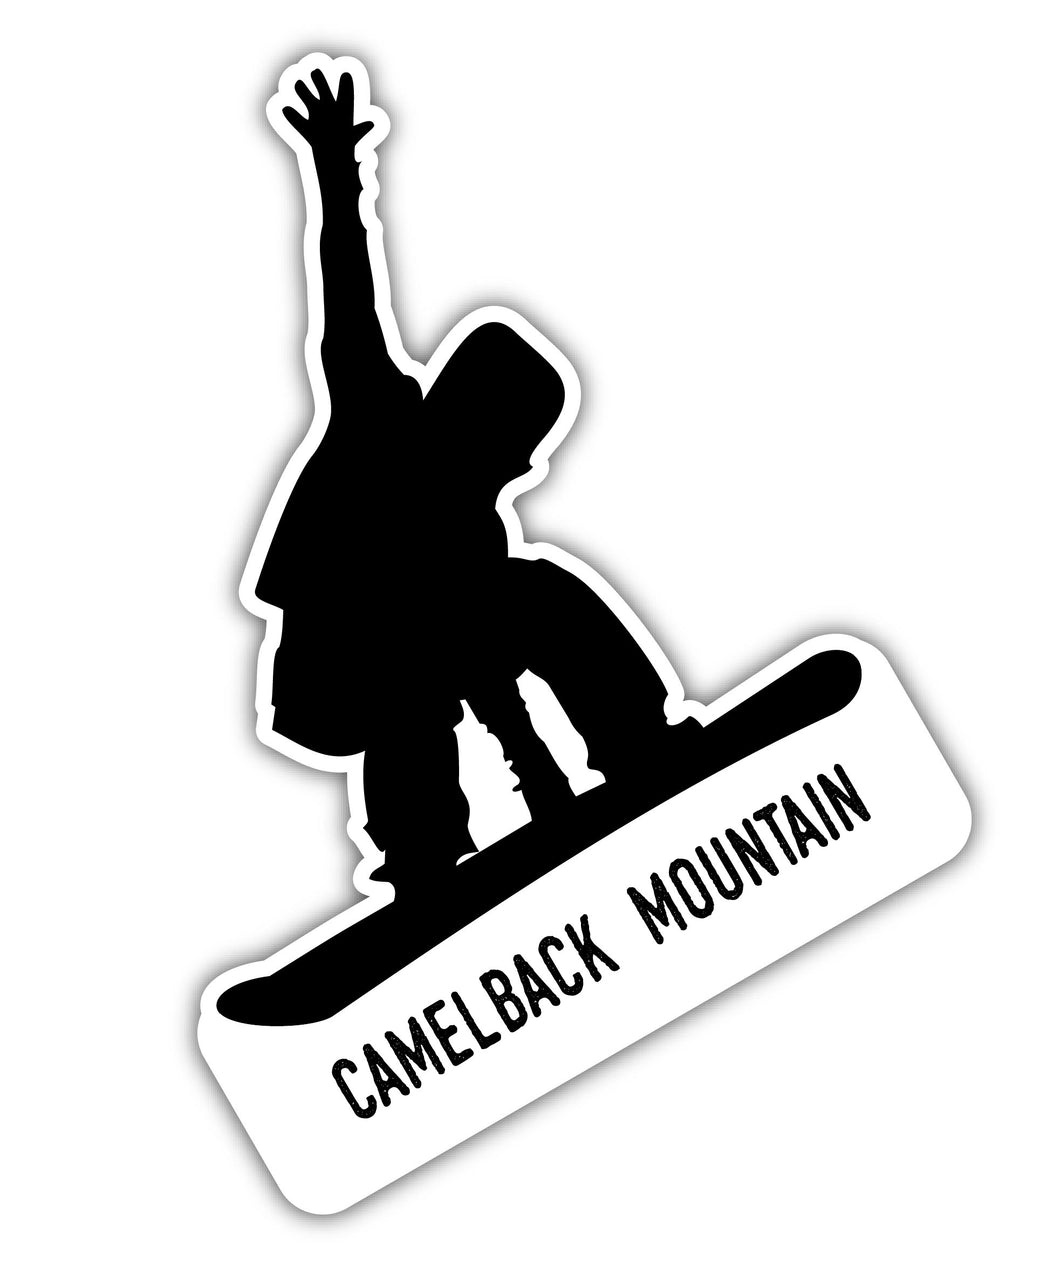 Camelback Mountain Pennsylvania Ski Adventures Souvenir 4 Inch Vinyl Decal Sticker Mountain Design